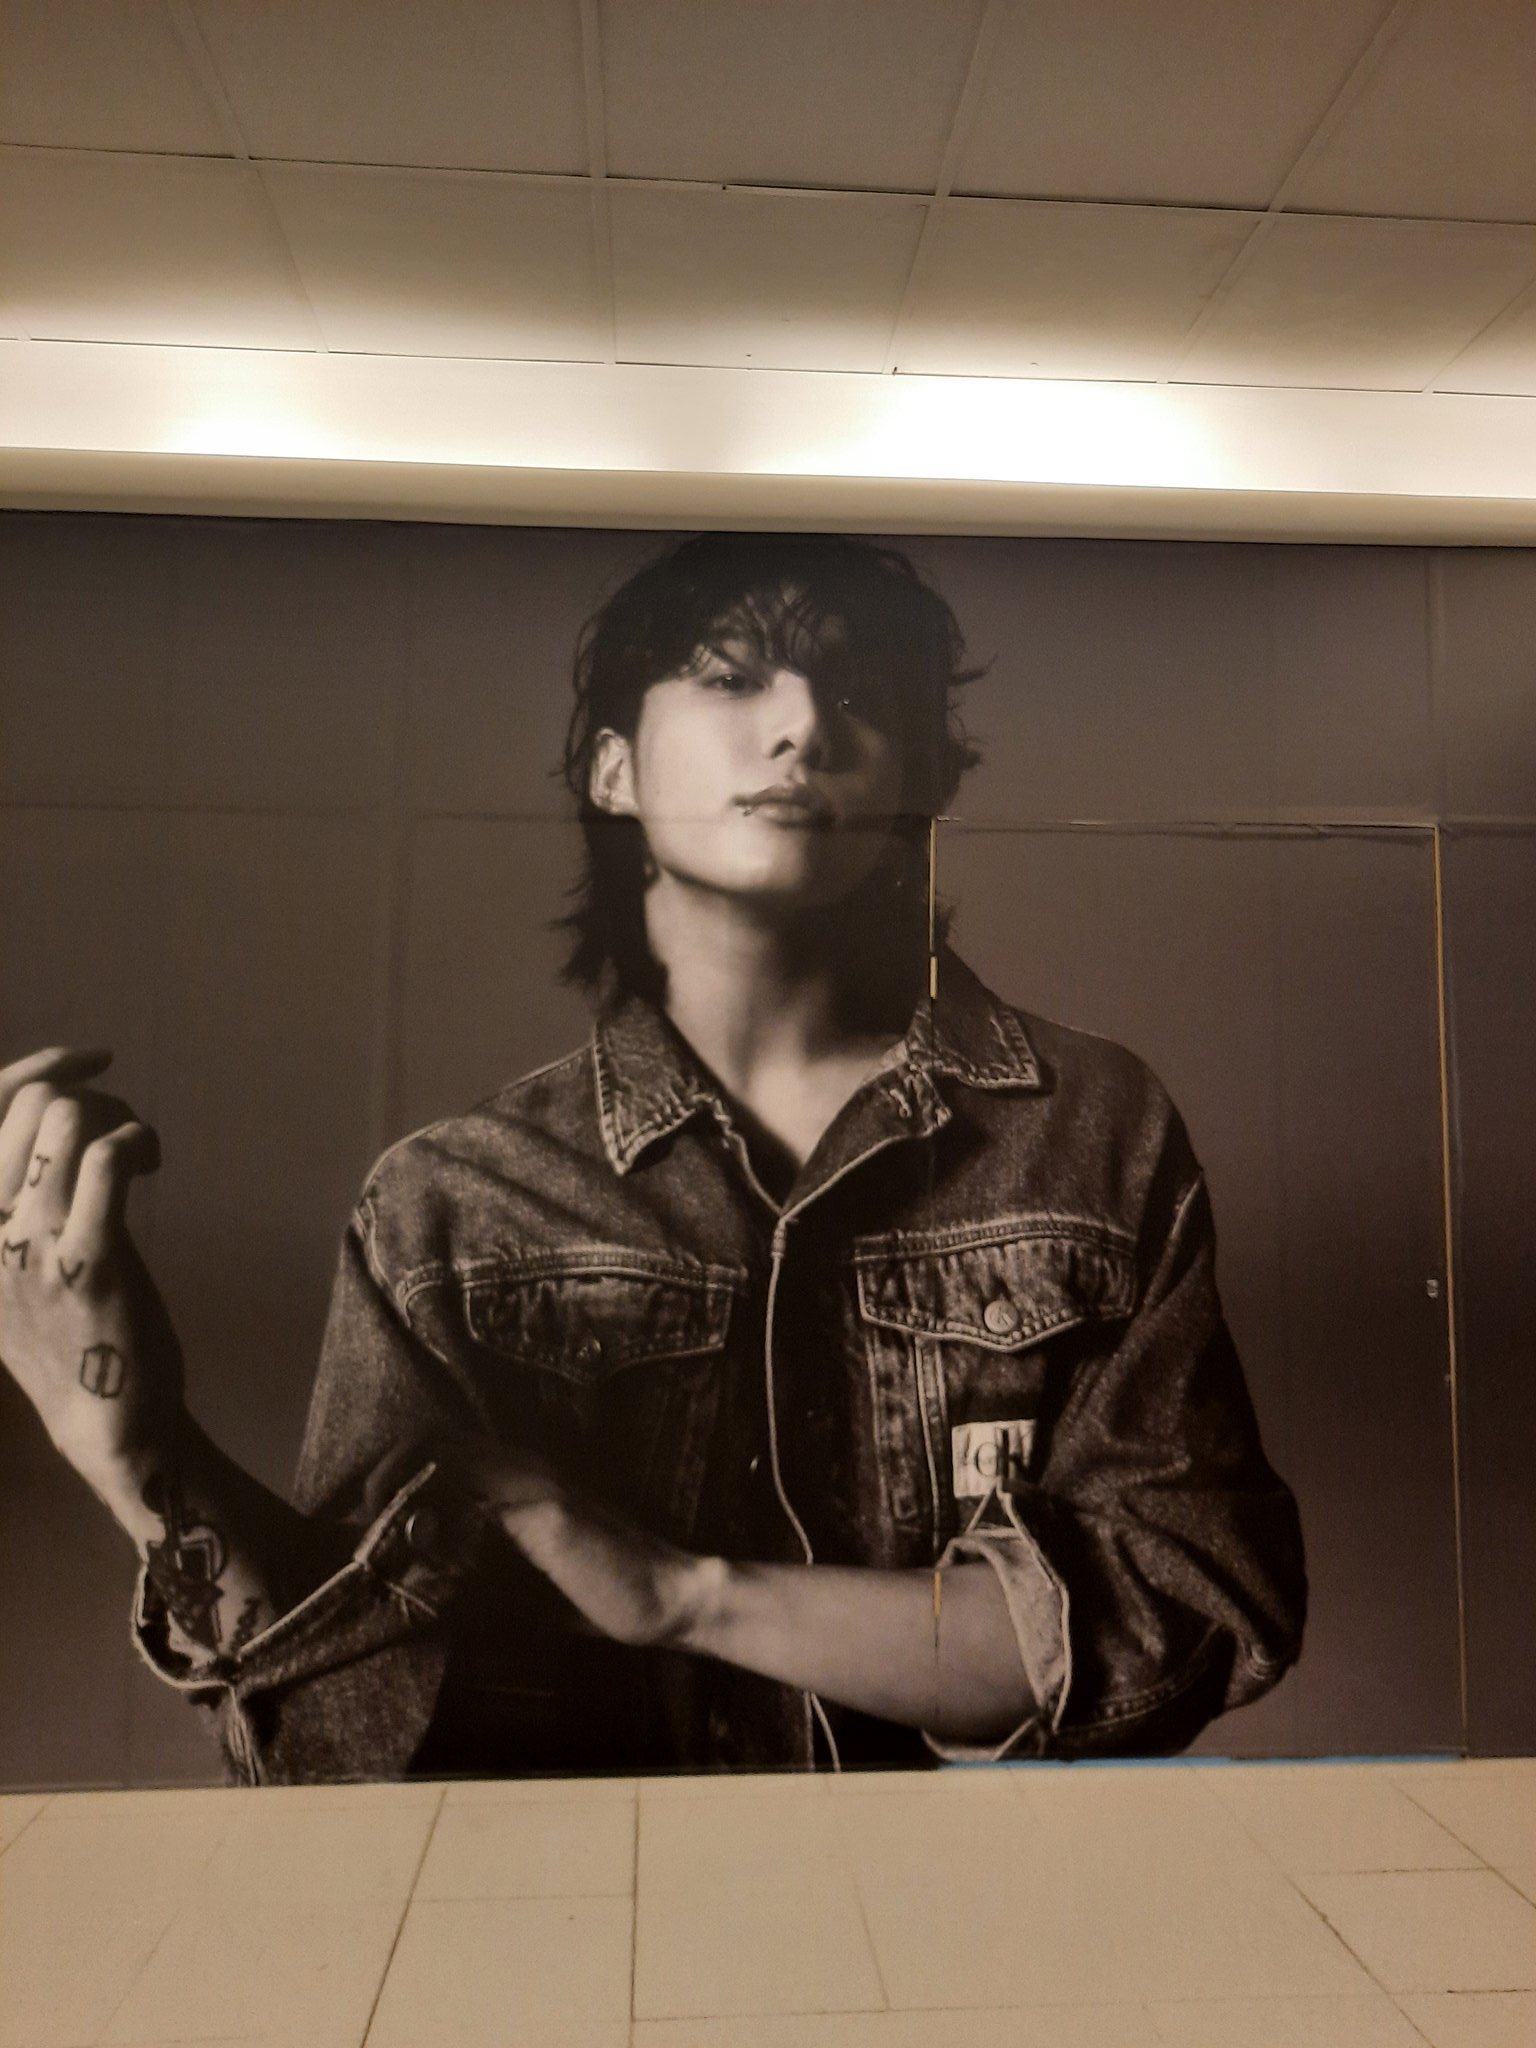 Jeon Jungkook Brazil on X: [📸] Finalmente cariocas! Anúncio de Jungkook  para a Calvin Klein em loja da marca no Barra Shopping, no Rio de Janeiro  🇧🇷 #JUNGKOOKxCALVINKLEIN  / X